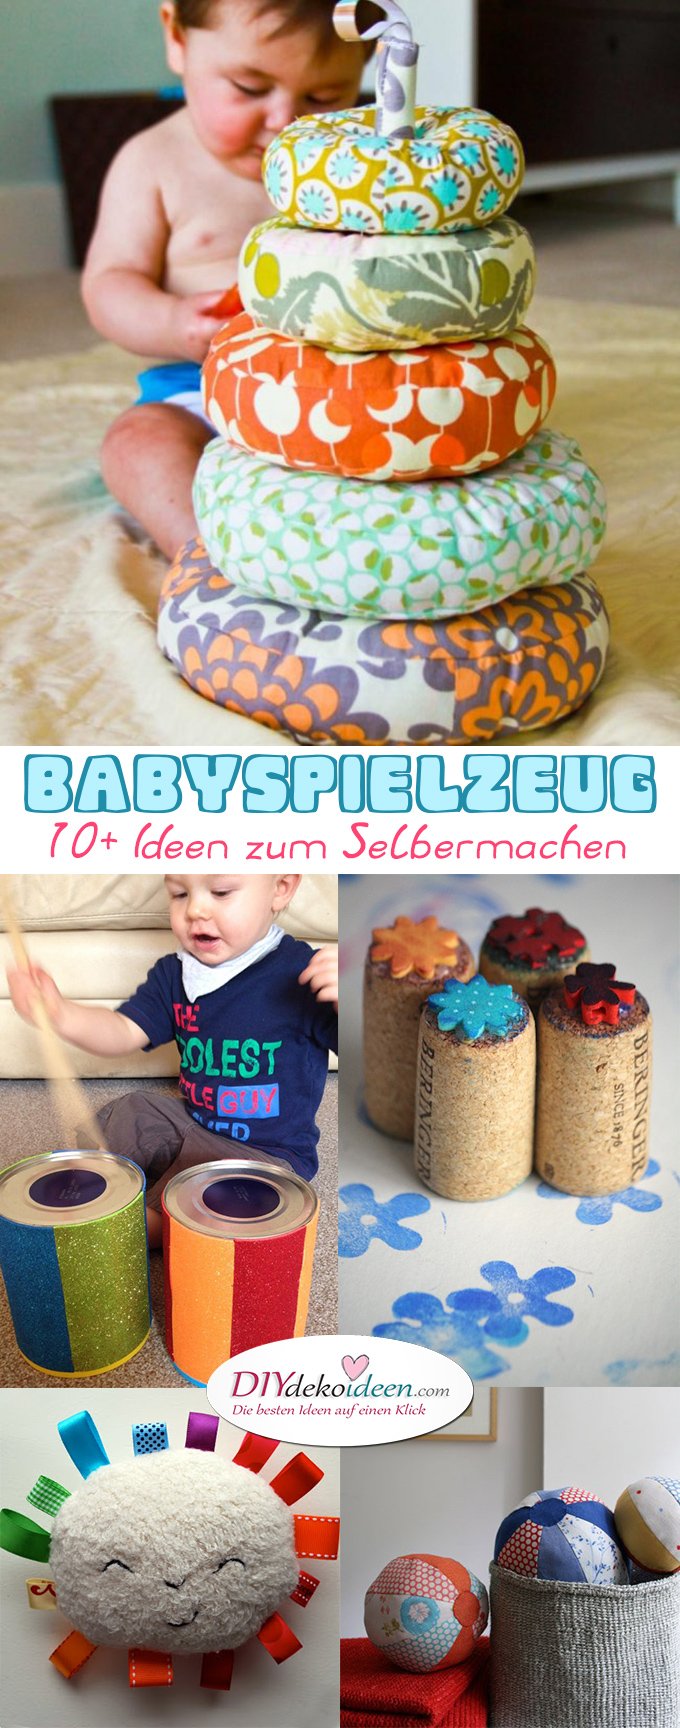 Babyspielzeug basteln -10+ süße DIY Bastelideen zum Selbermachen